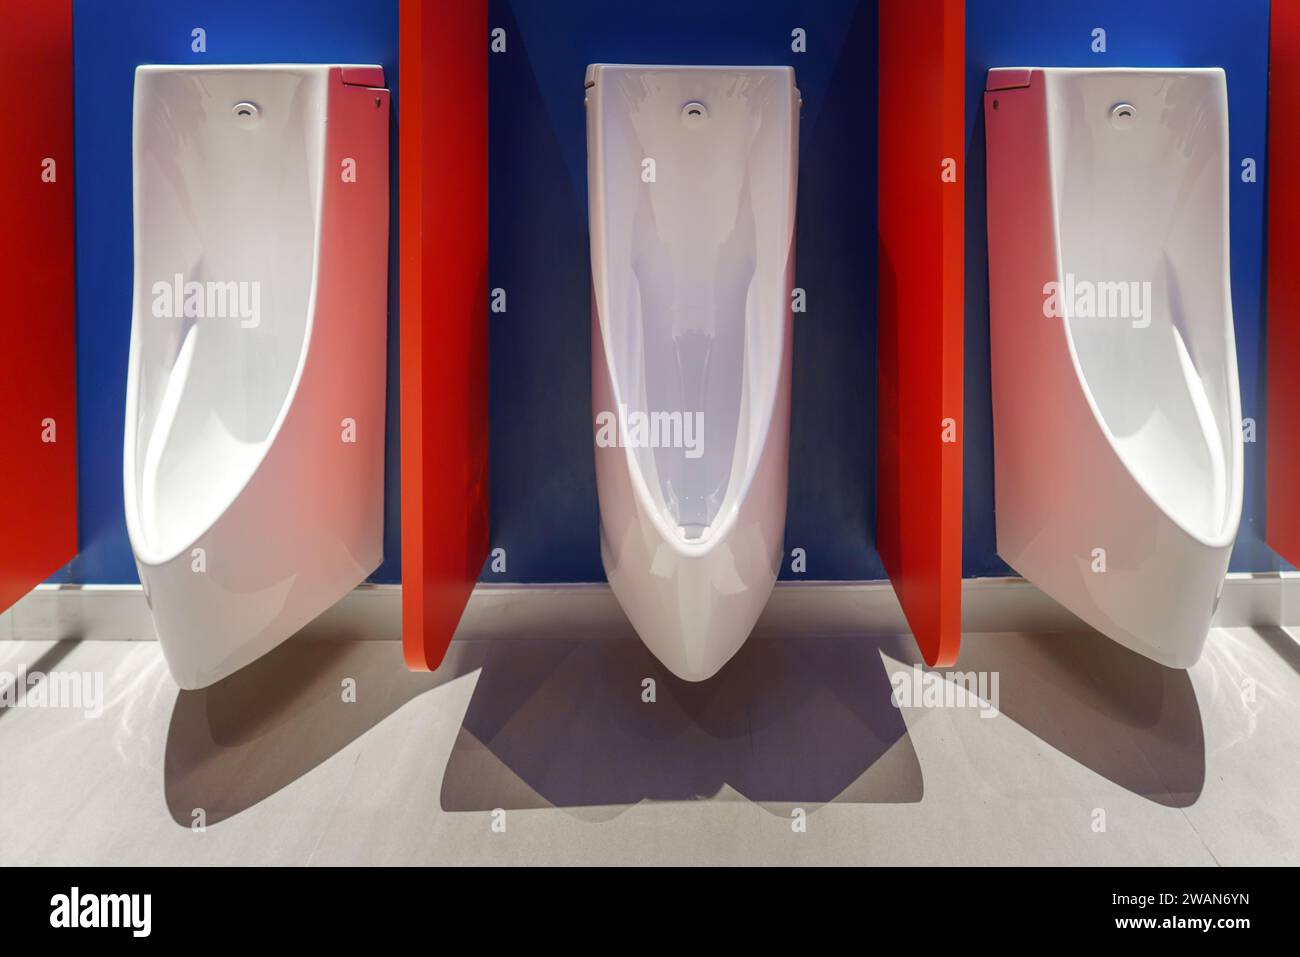 Cuvette de toilette homme dans une scène impeccable de toilettes publiques reflète un design moderne, mettant l'accent sur la propreté et le confort. Banque D'Images